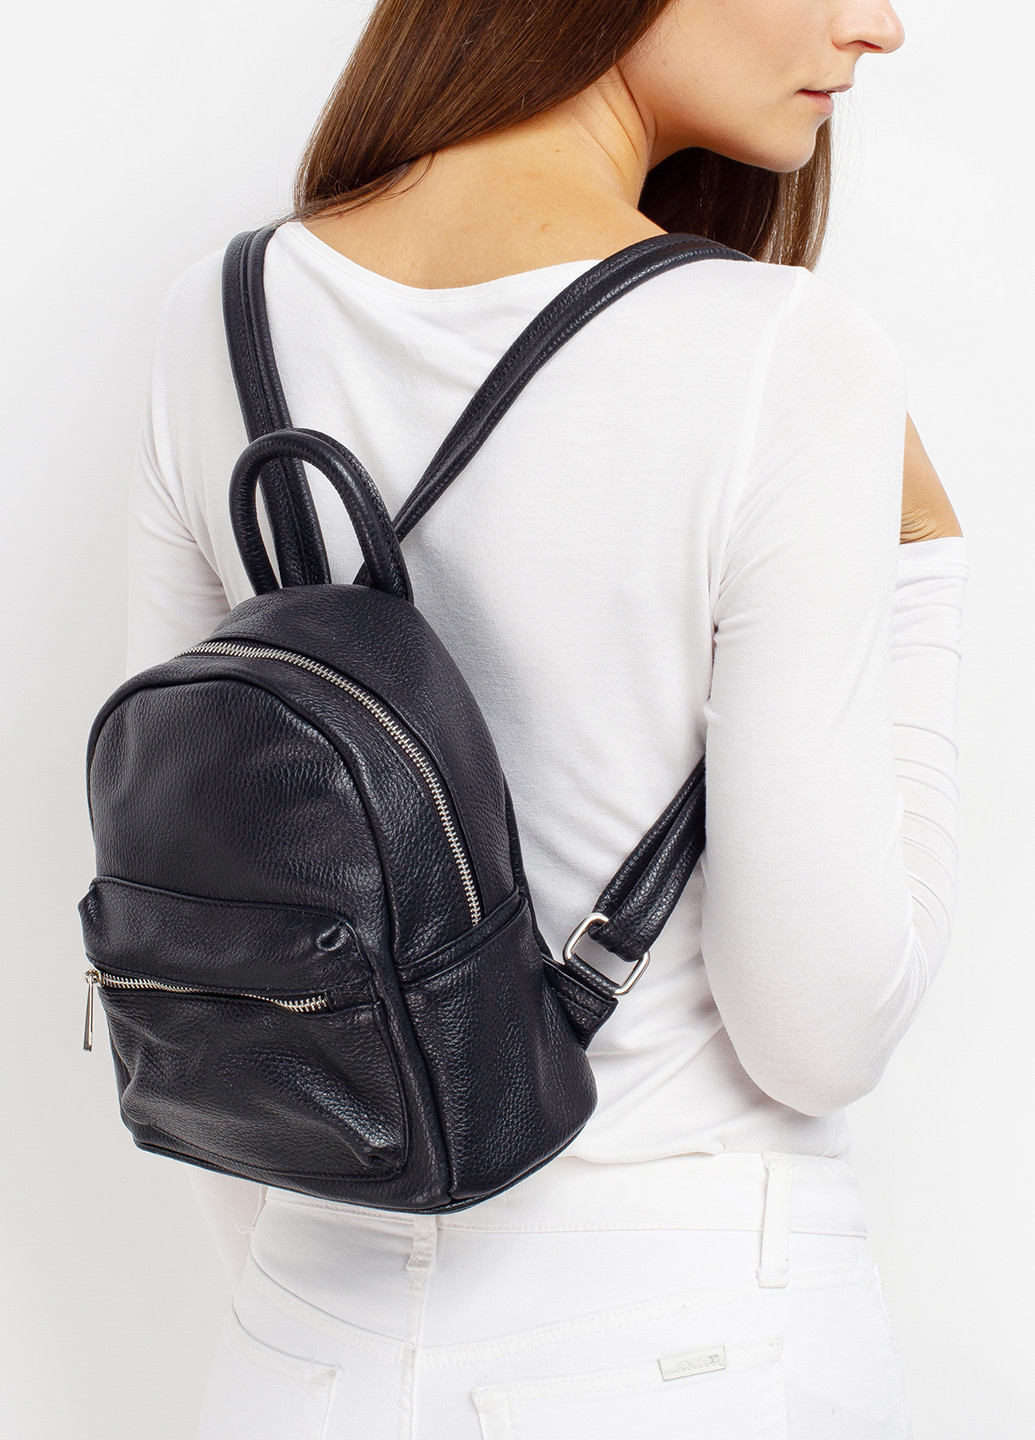 Рюкзак женский кожаный Backpack Regina Notte (249624380)